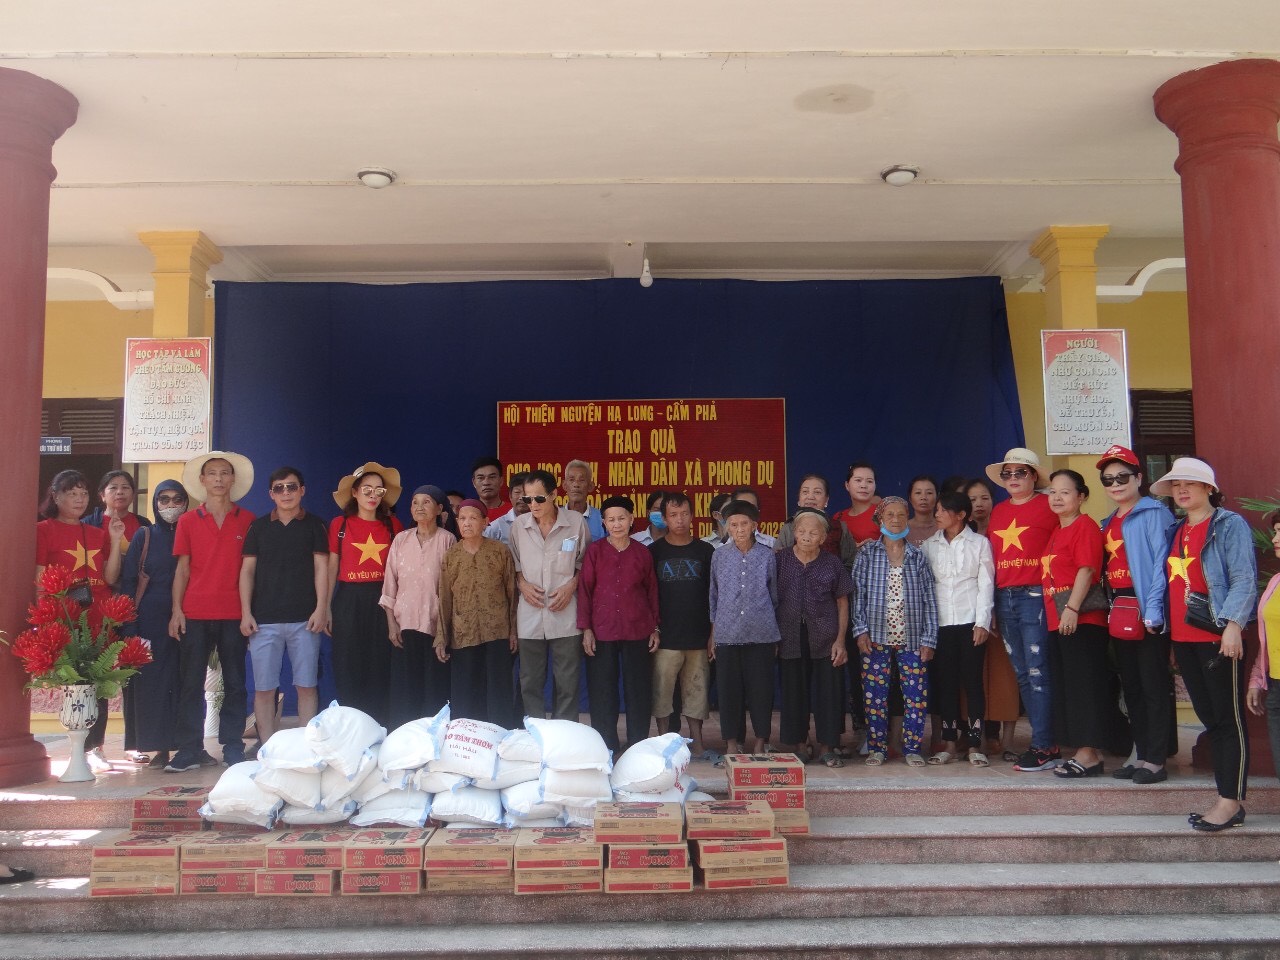 Trao tặng nhu yếu phẩm cho người nghèo xã vùng cao Phong Dụ